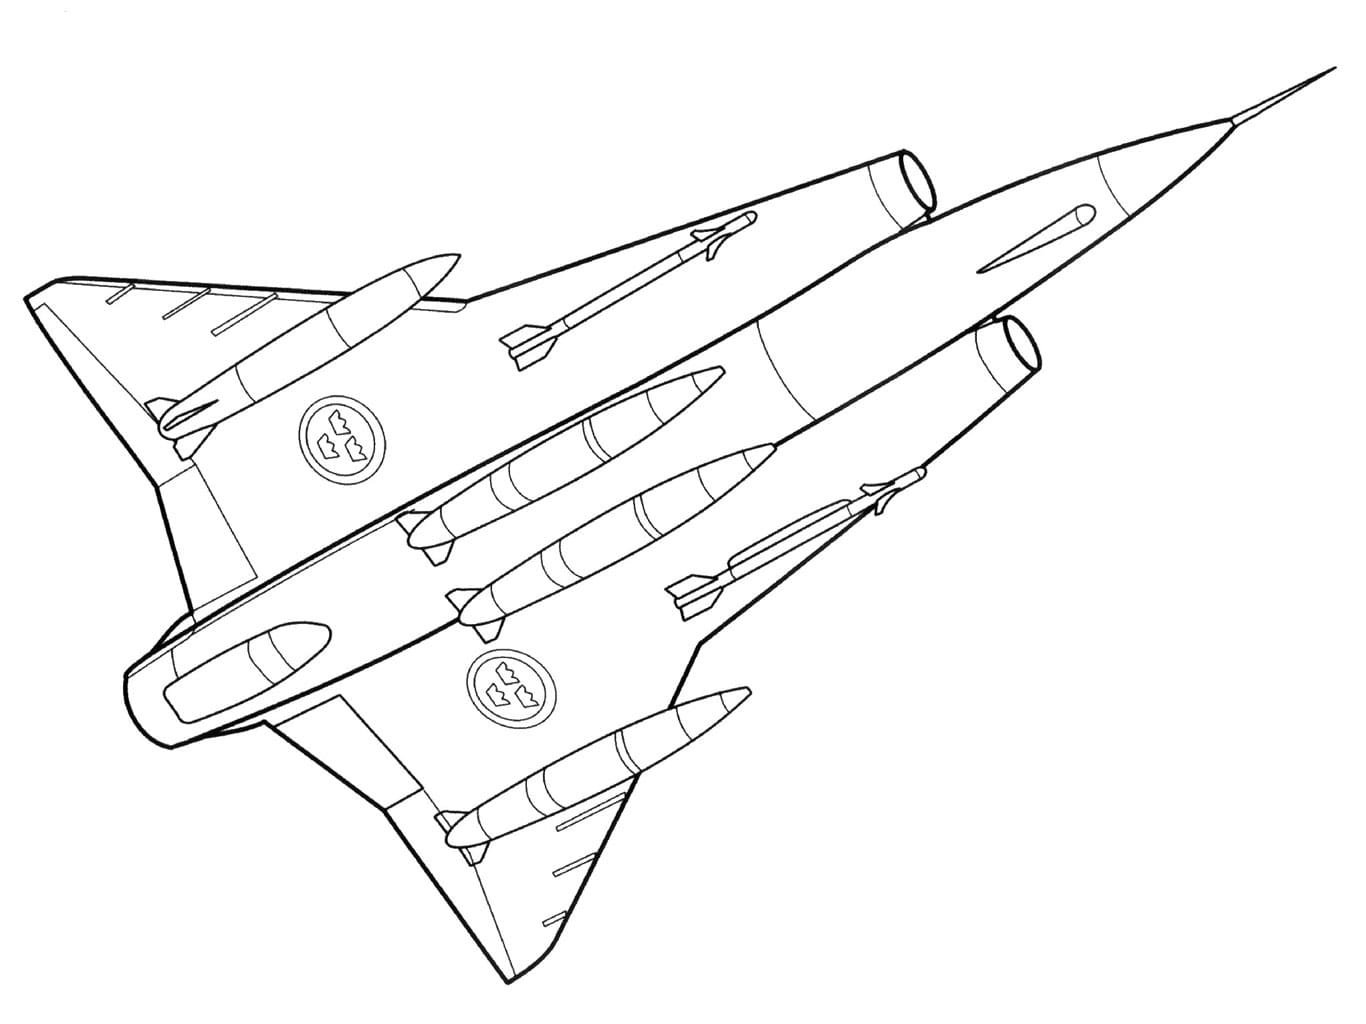 Saab 35 Draken чертеж